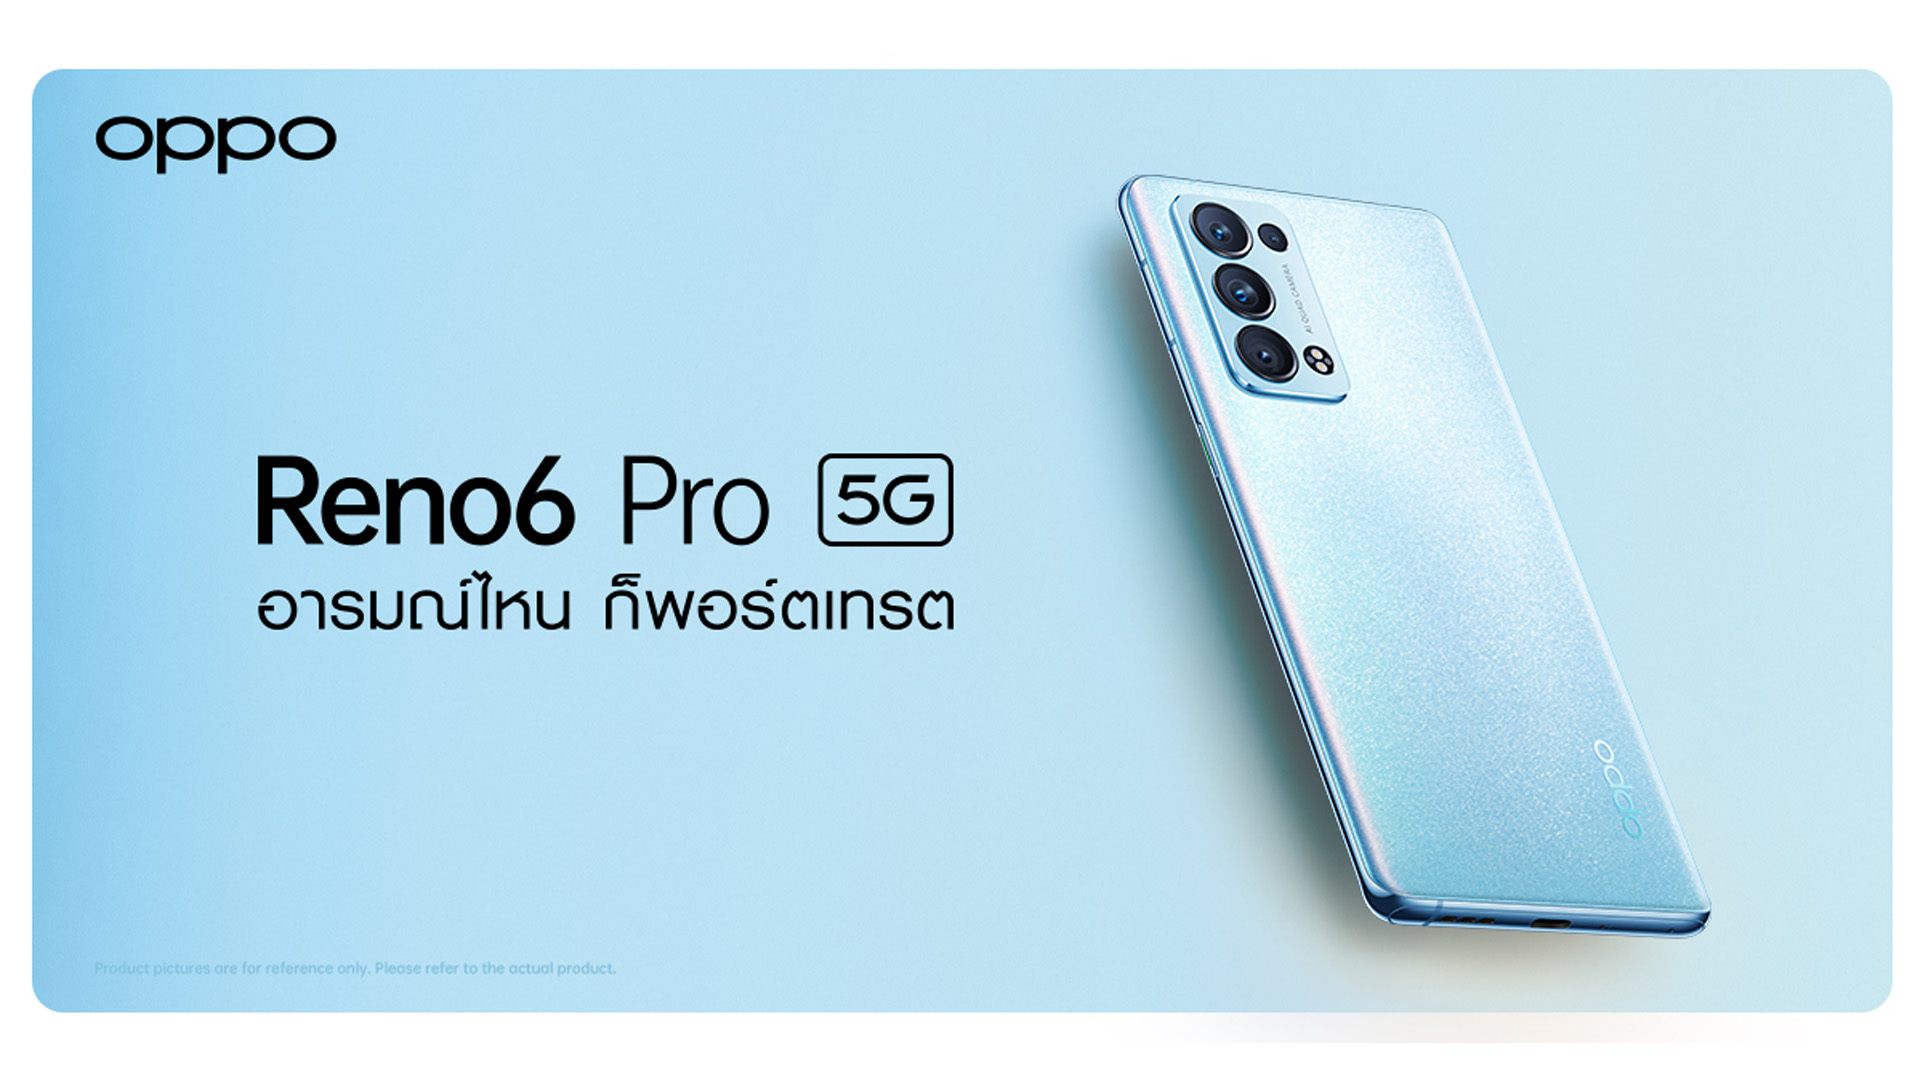 จำหน่ายแล้ว OPPO Reno6 Pro 5G สีใหม่! Arctic Blue สมาร์ตโฟนพอร์ตเทรตรุ่นท็อป ในราคา 22,990 บาท